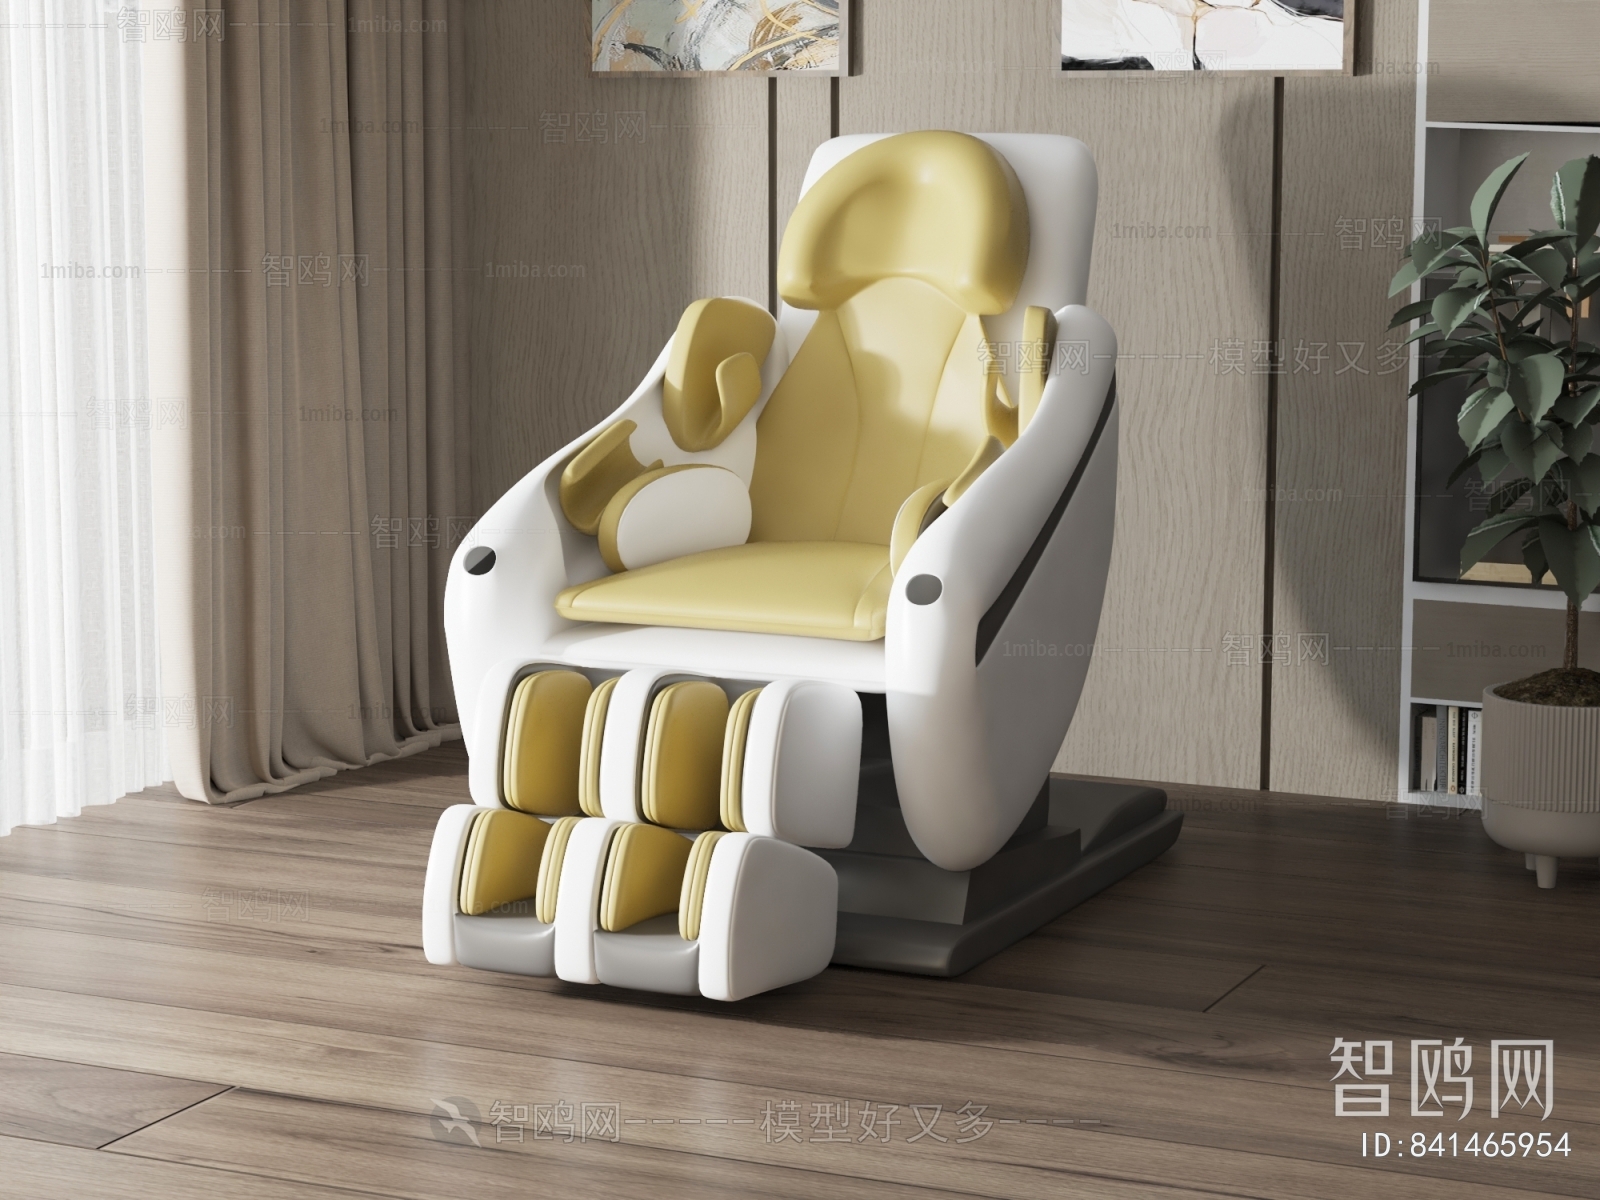 Modern Massage Chair